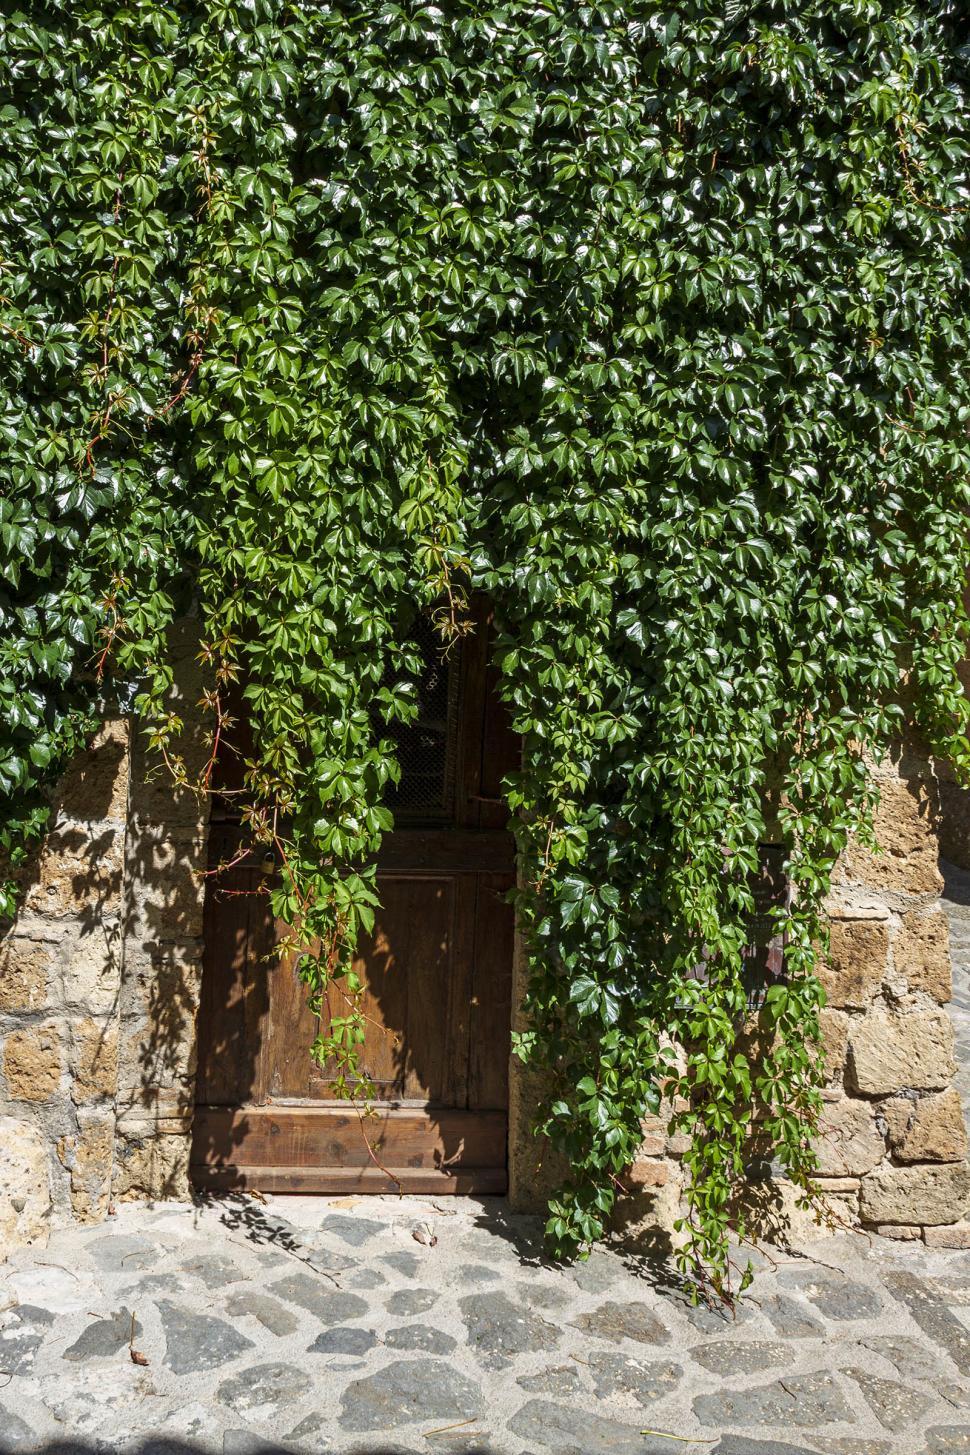 Free Image of Wooden door with vines 